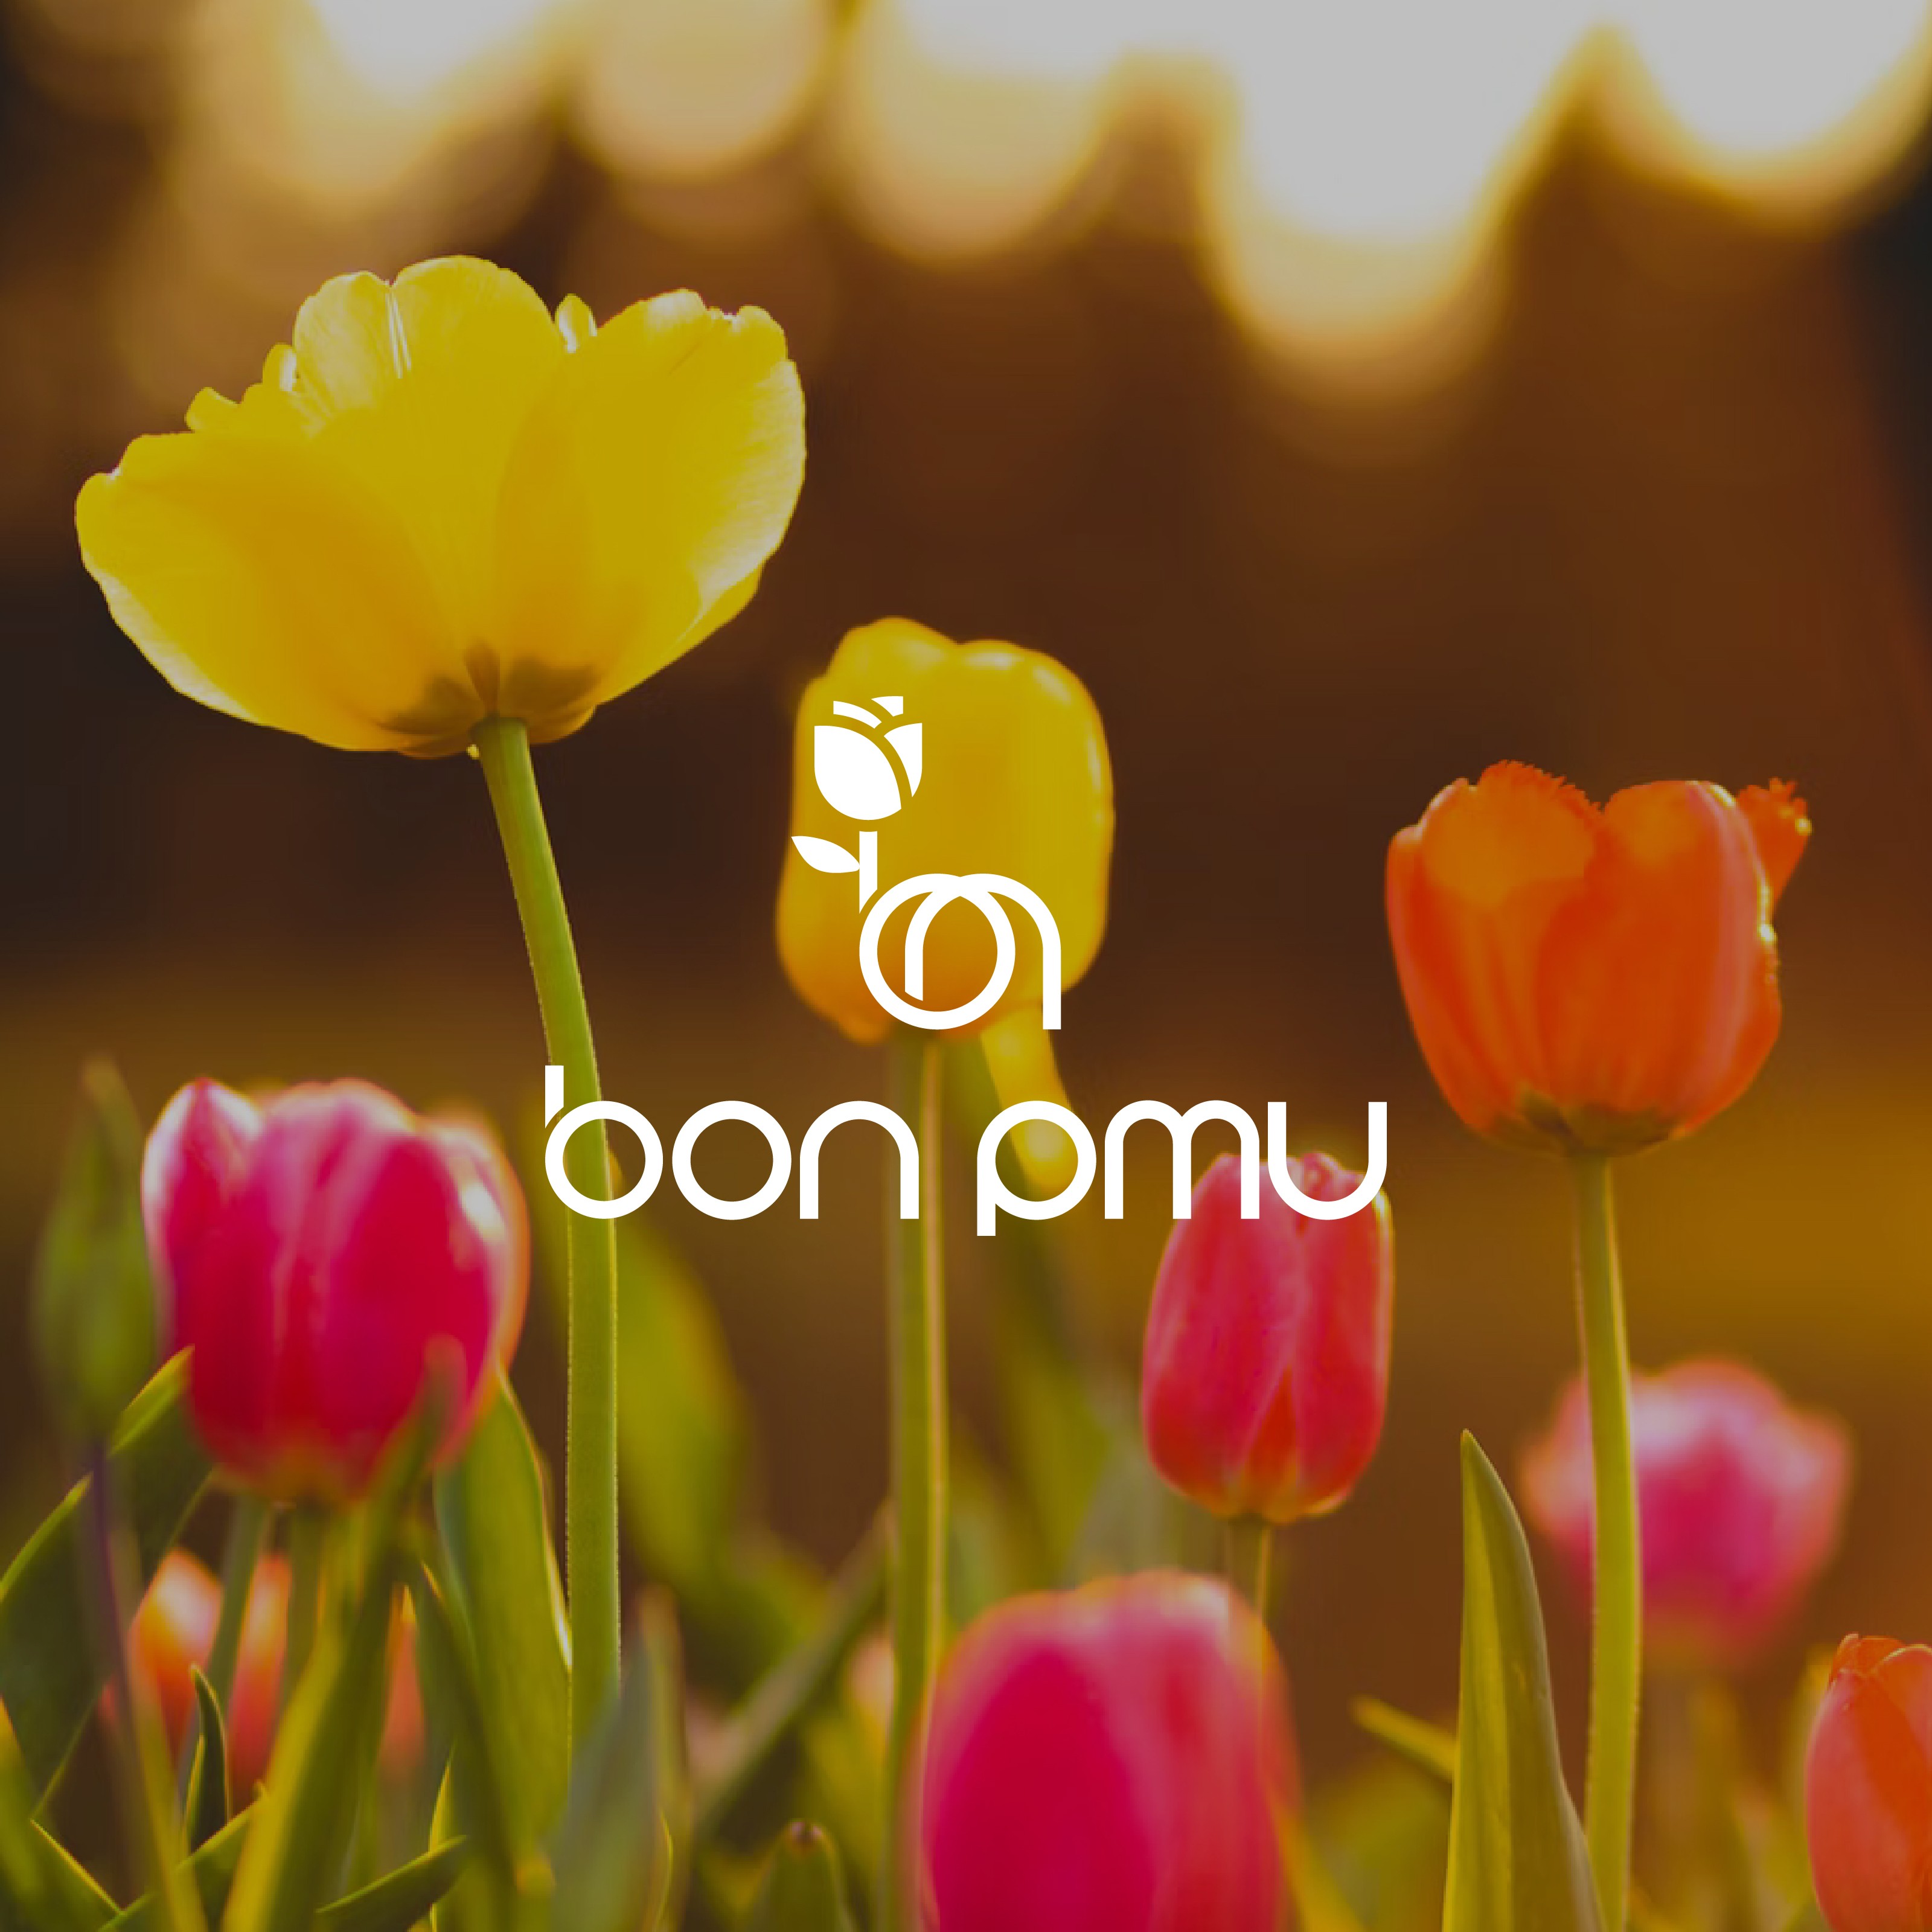 포트폴리오-" bon pmu "